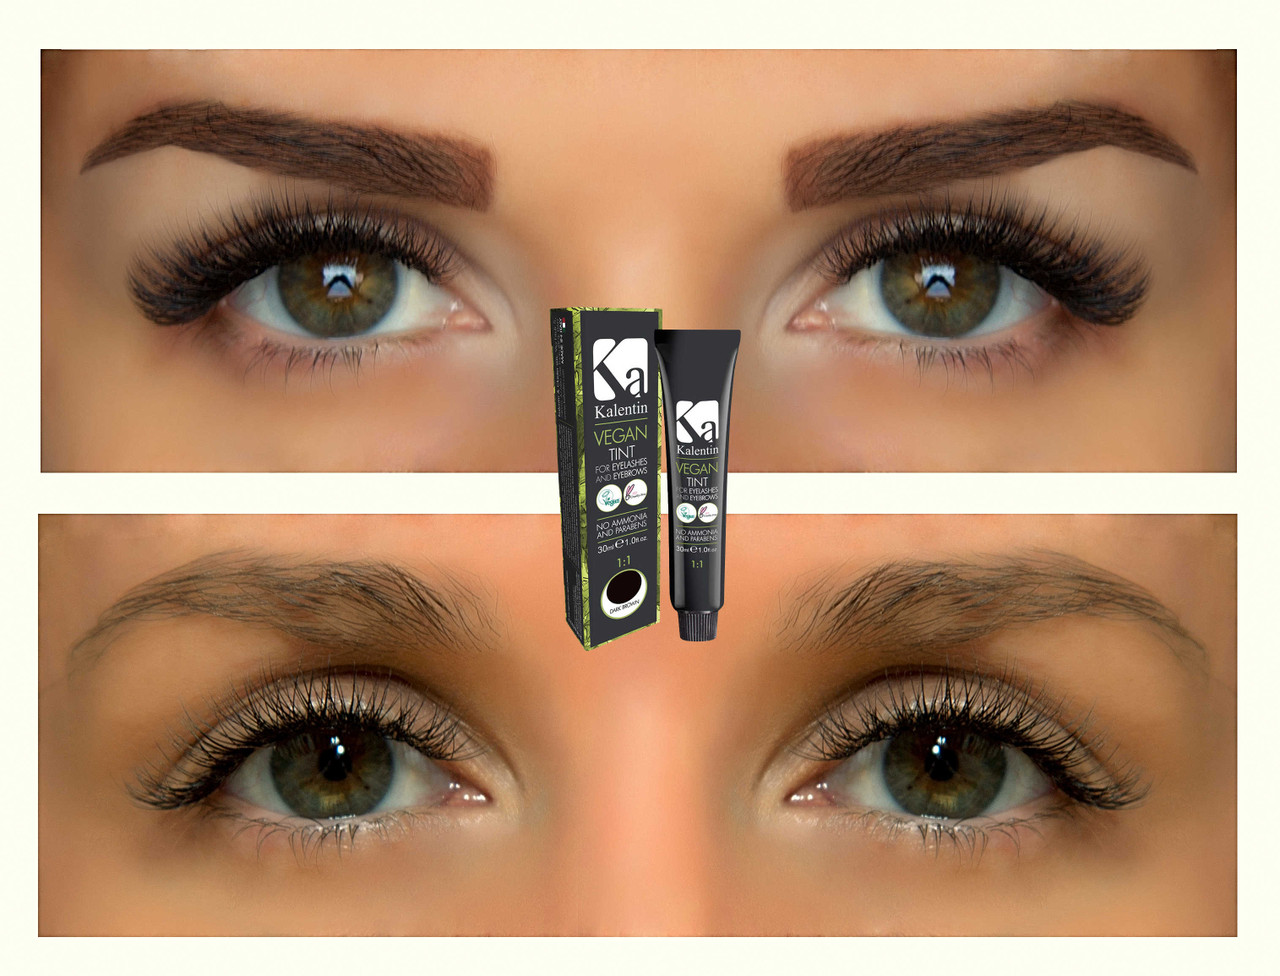 Apraise Eyelash & Eyebrow Tinting kit 4 colours